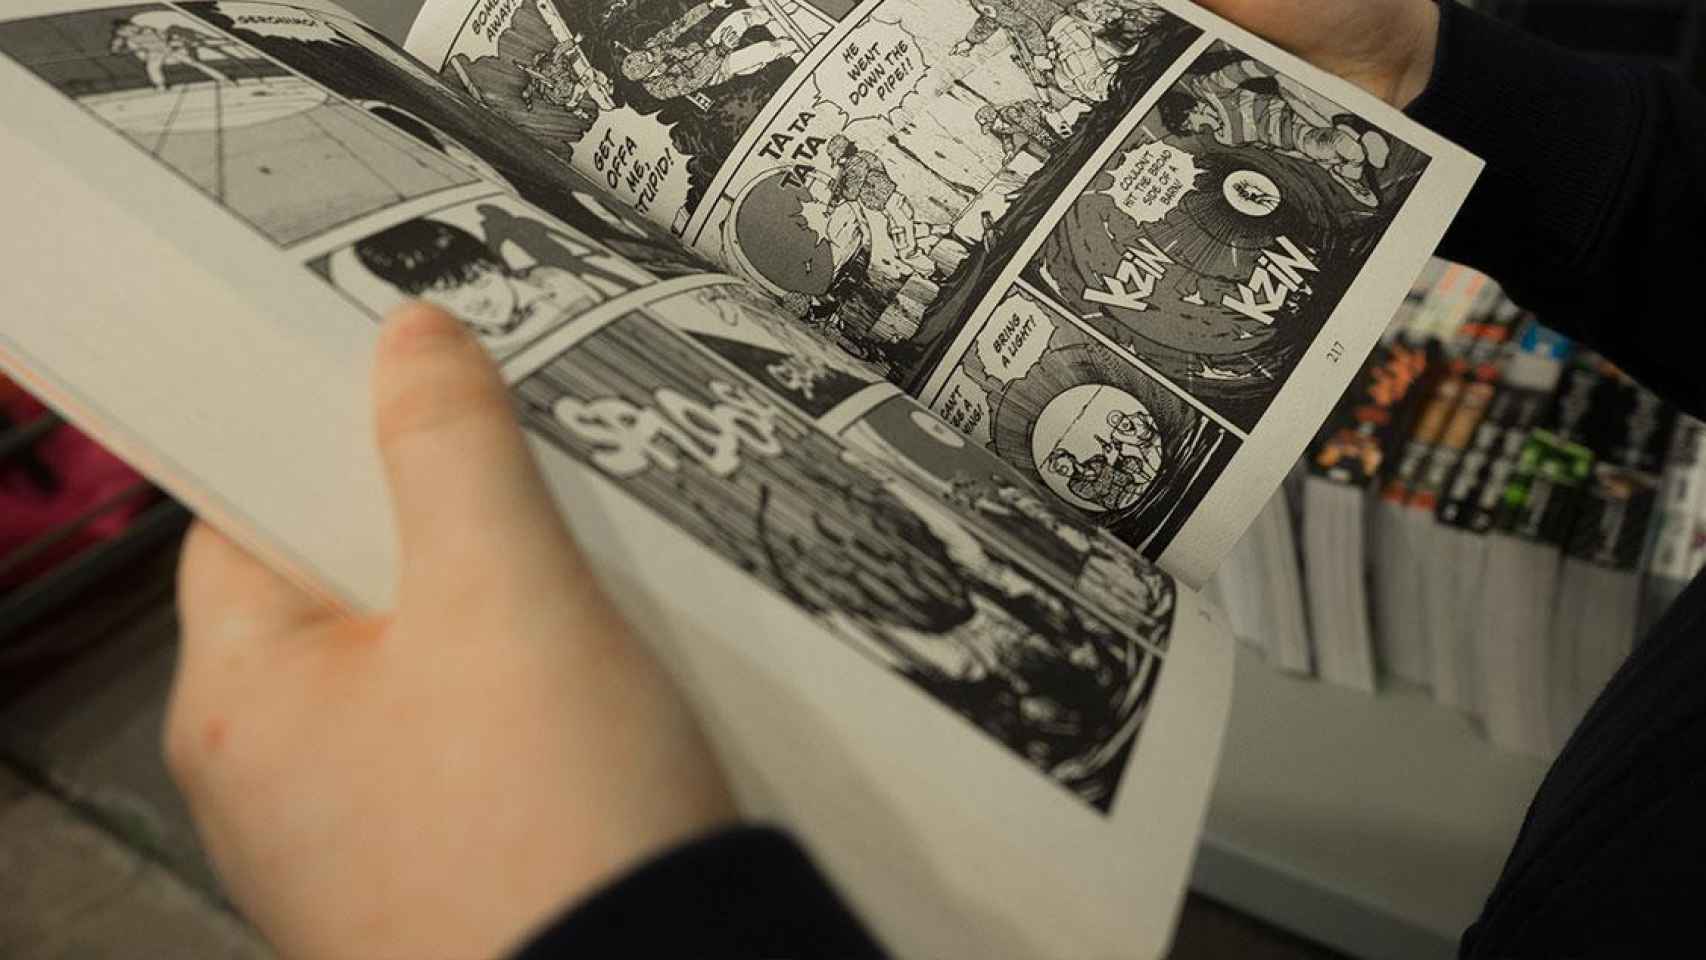 Una persona sostiene un cómic entre sus manos / MIIKA LAAKSONEN - UNSPLASH